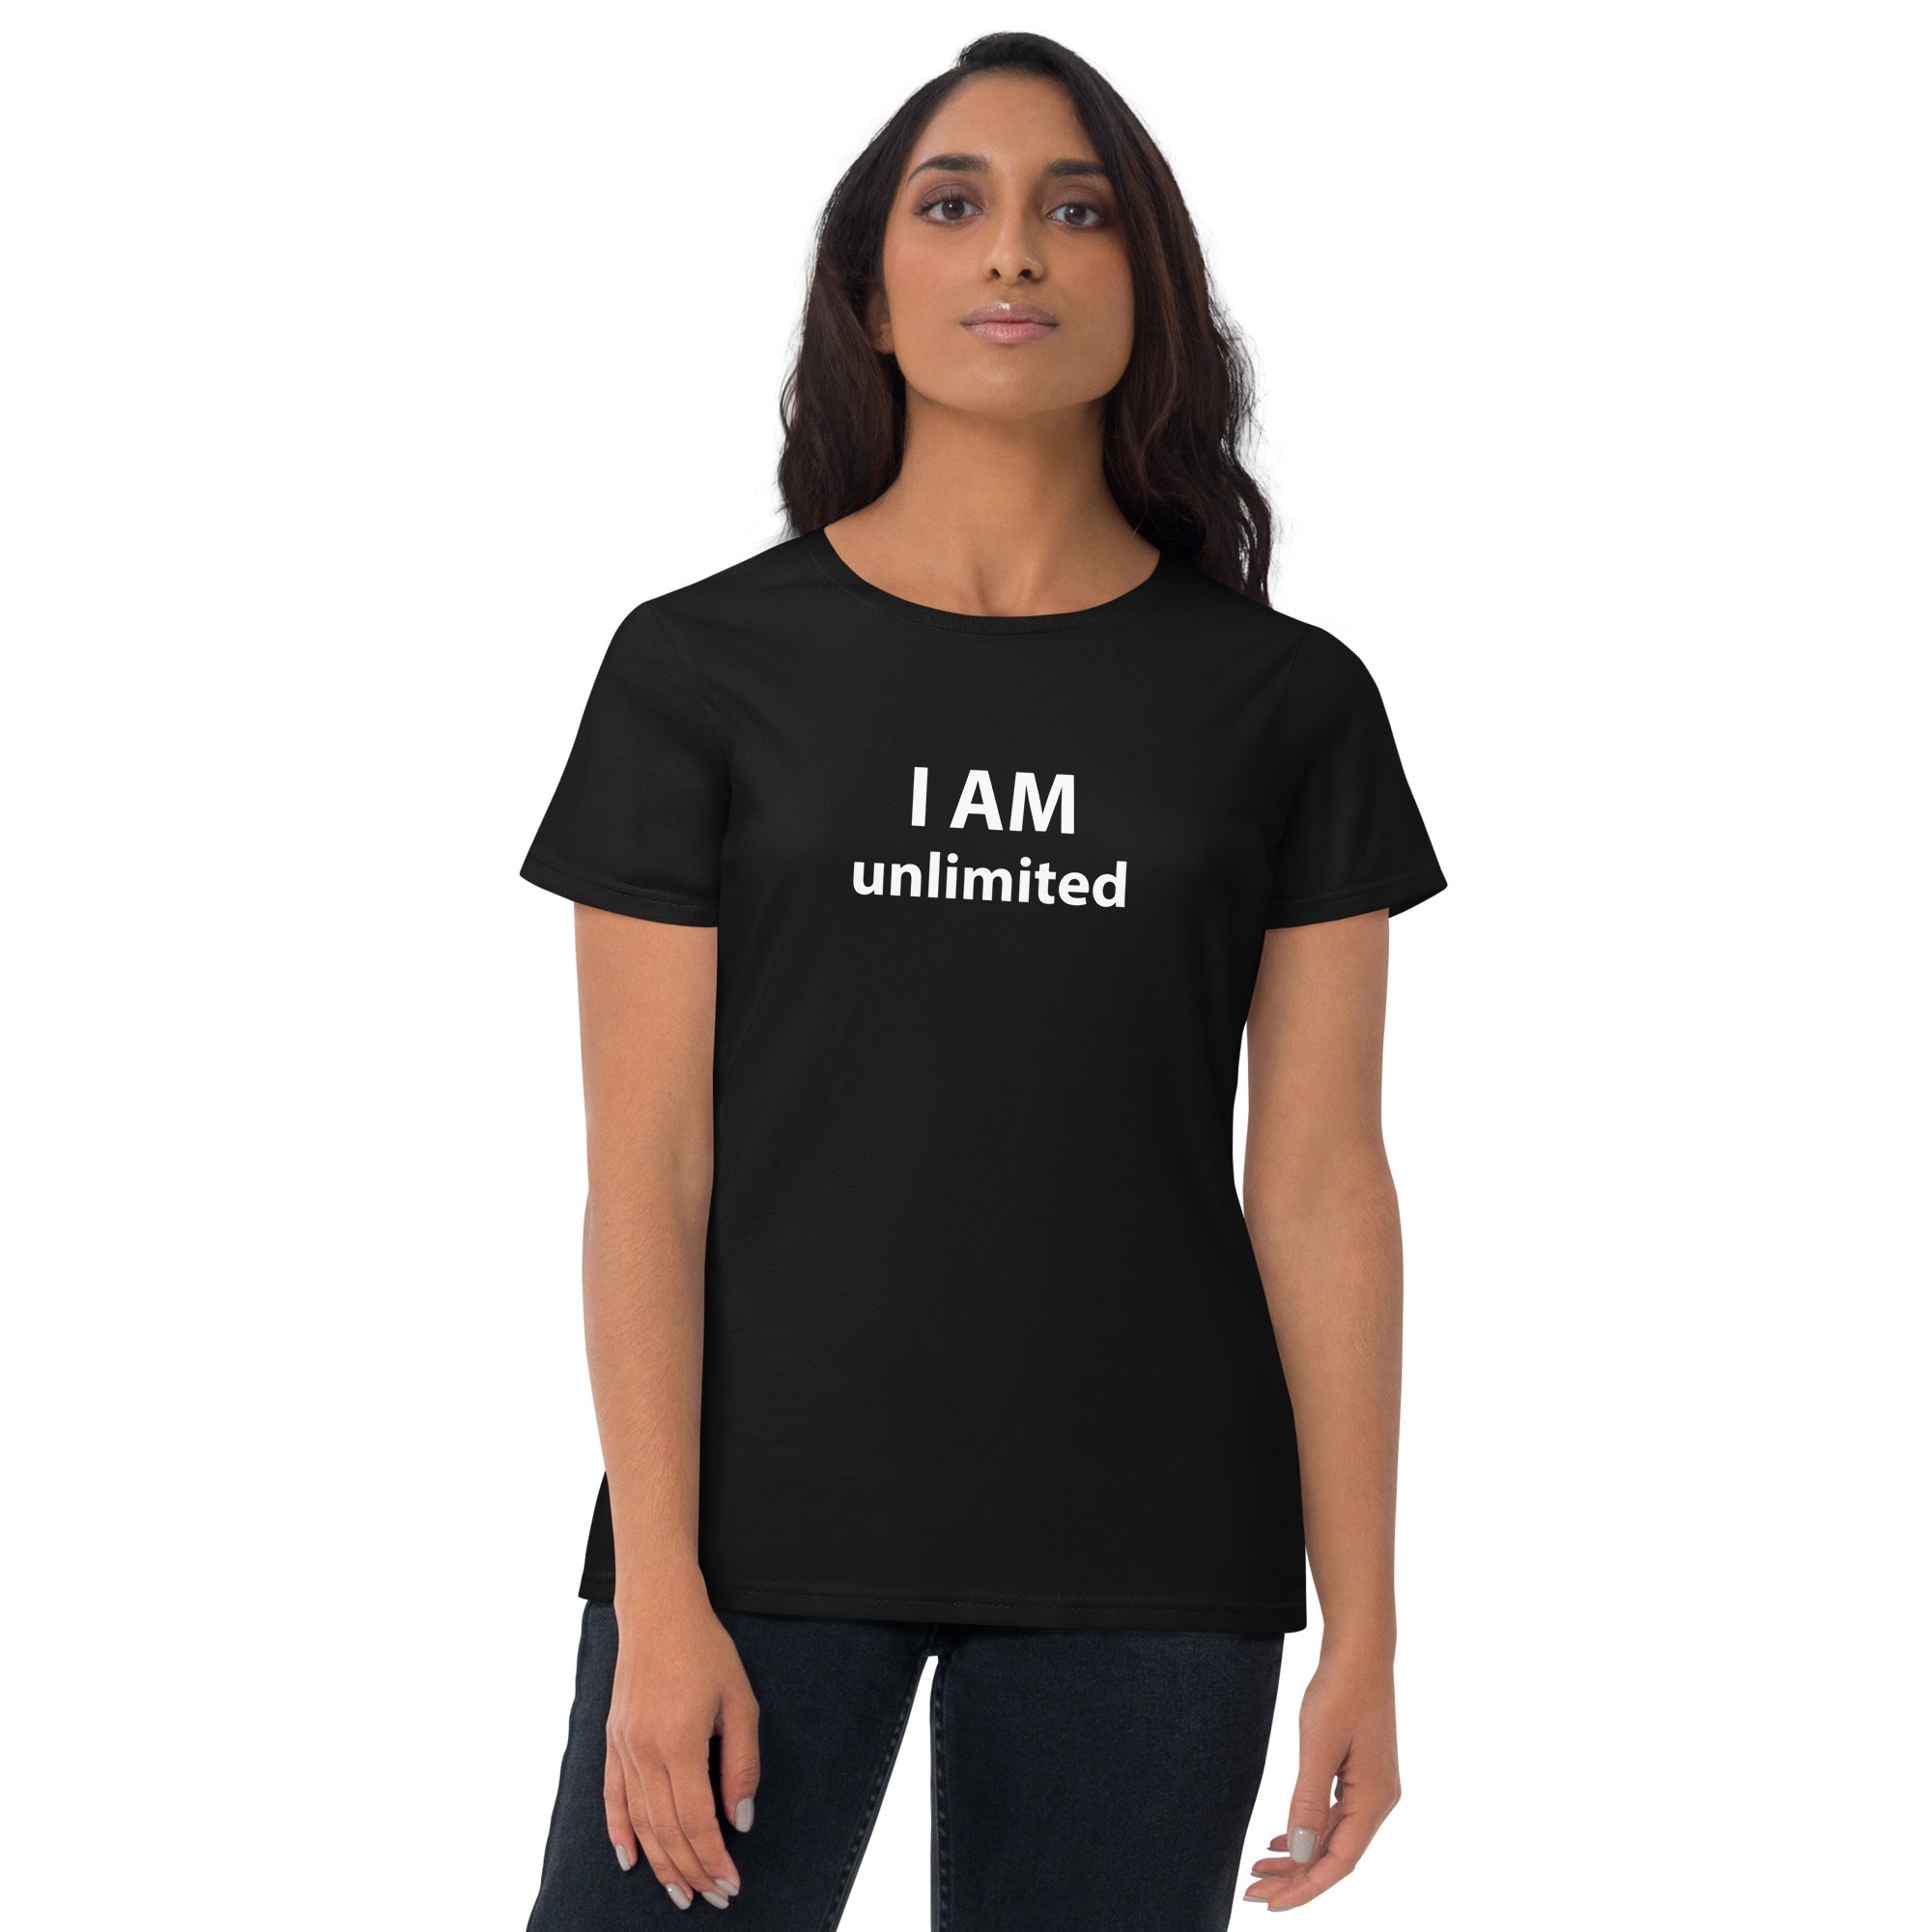 I AM UNLIMITED Tshirt